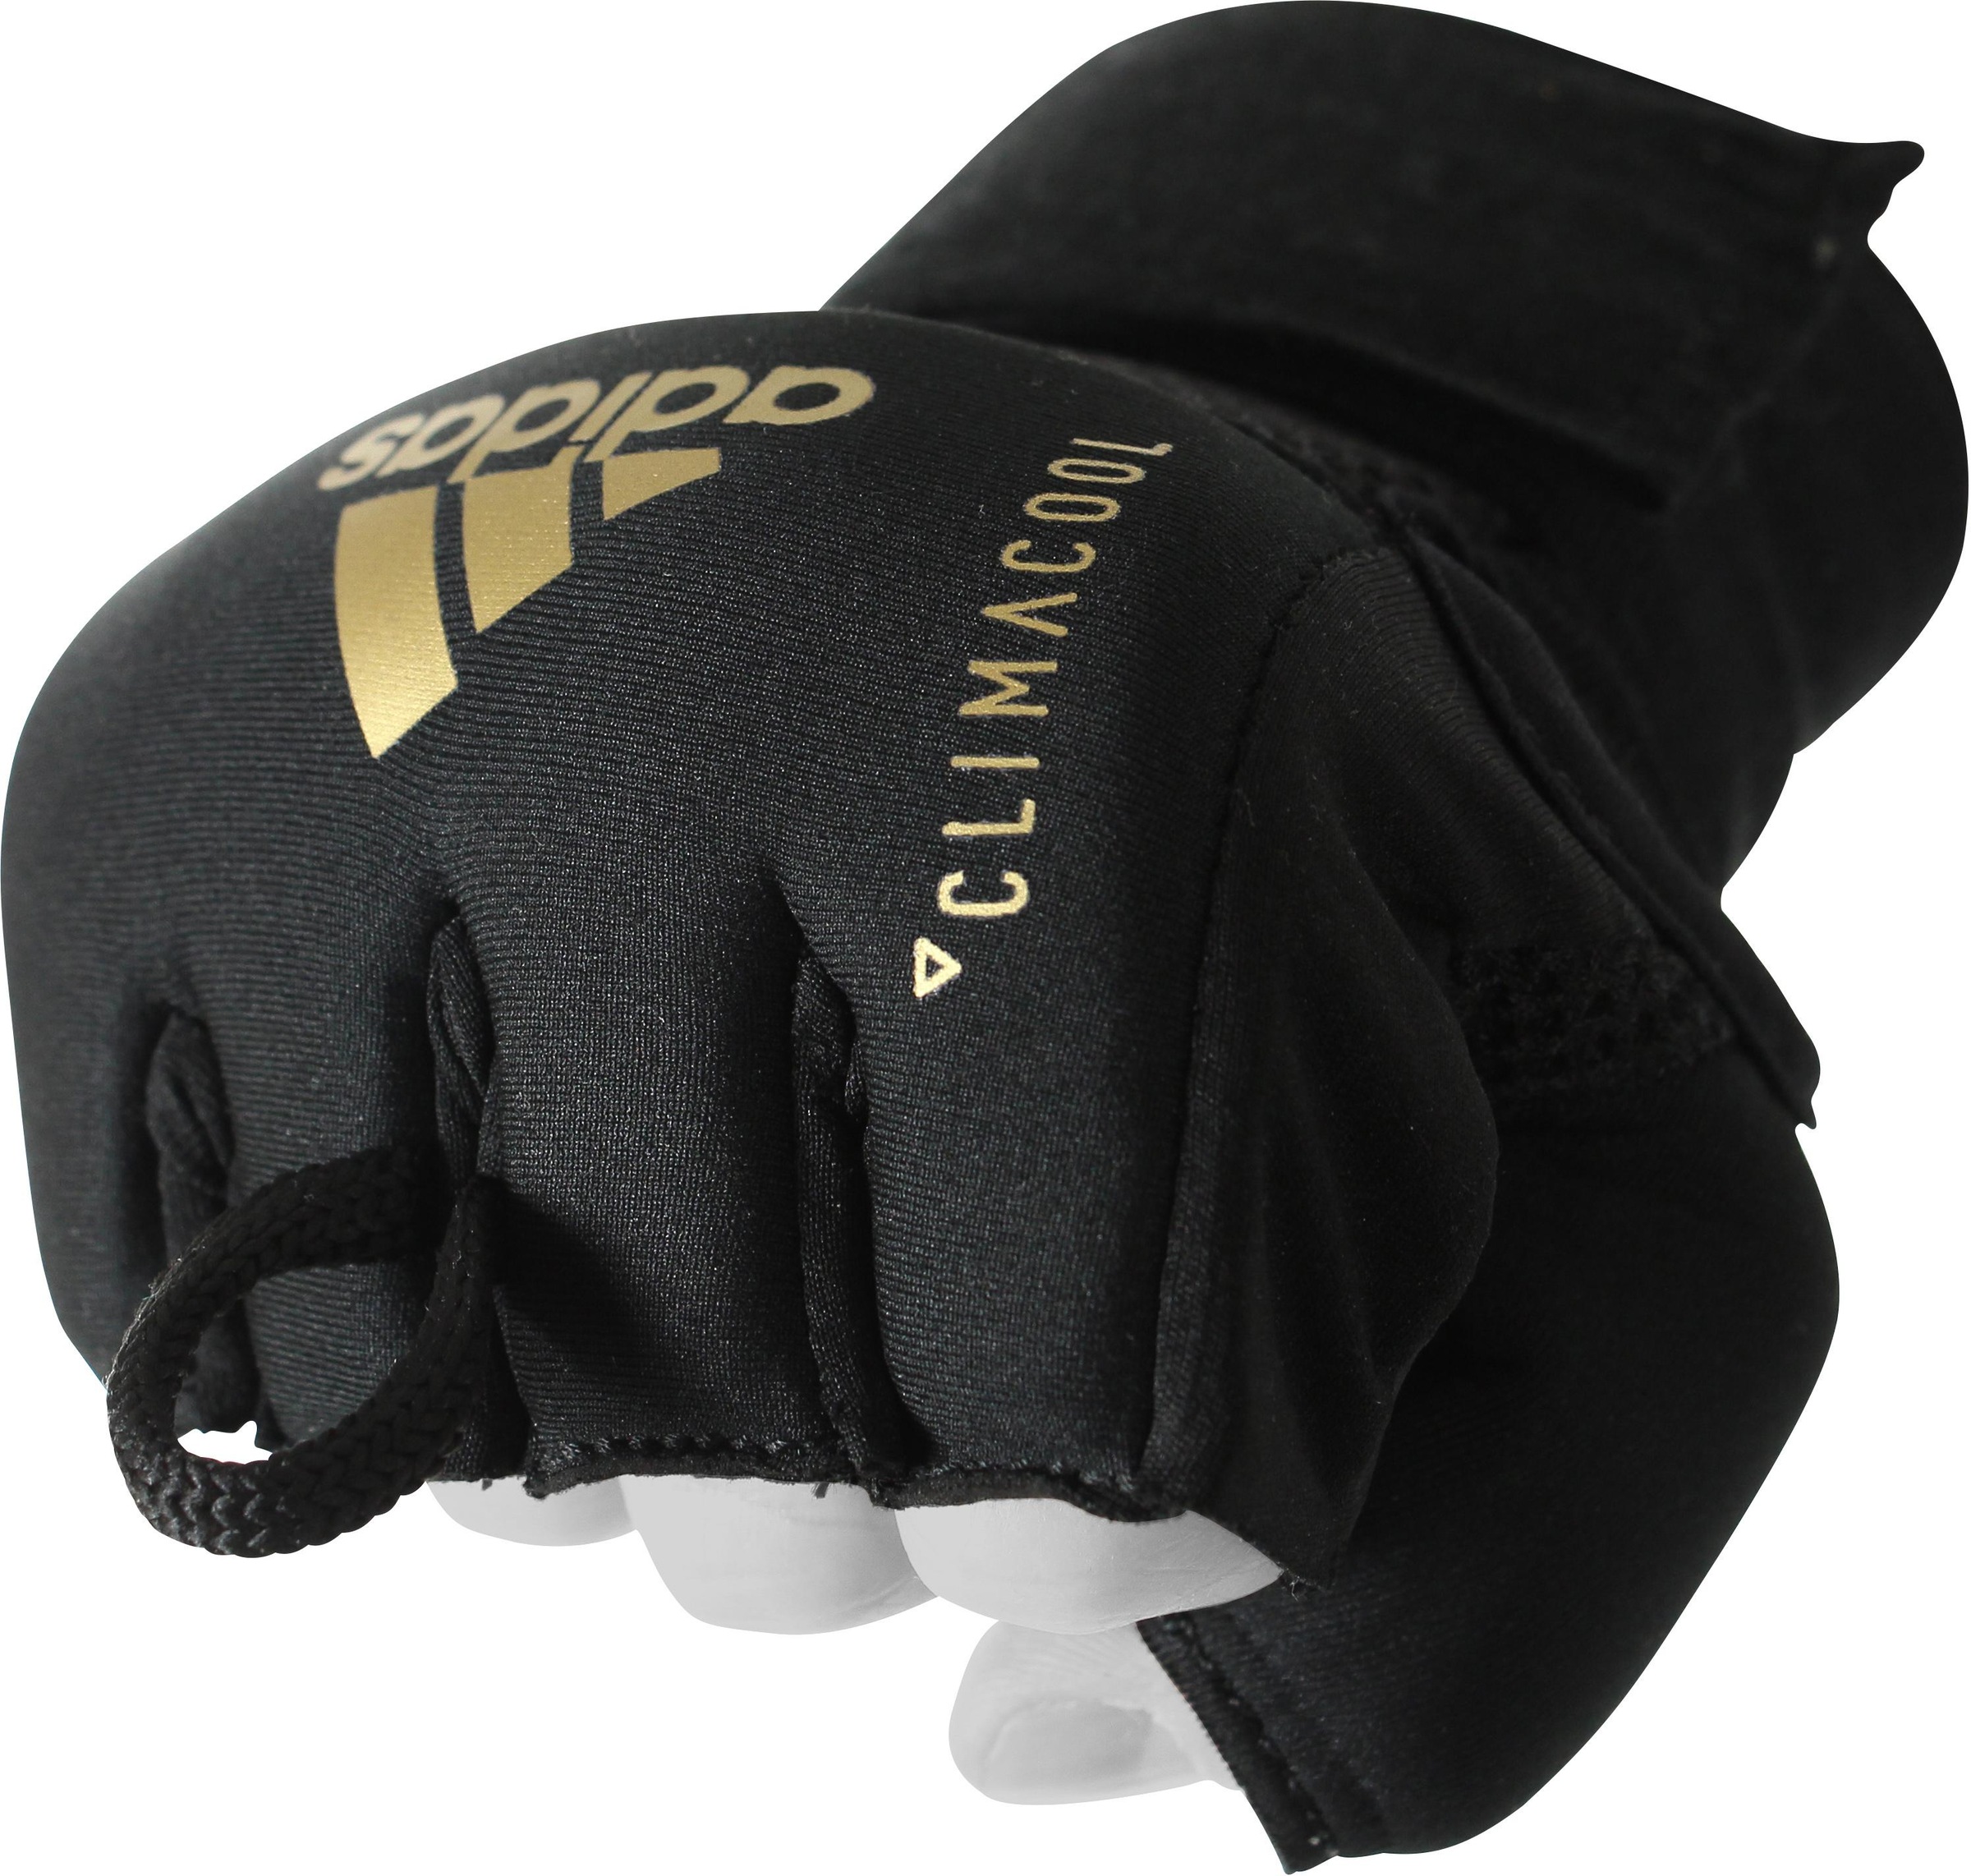 Wrap Performance Punch-Handschuhe Jelmoli-Online ordern Quick im ❤ »Speed adidas Glove« Shop